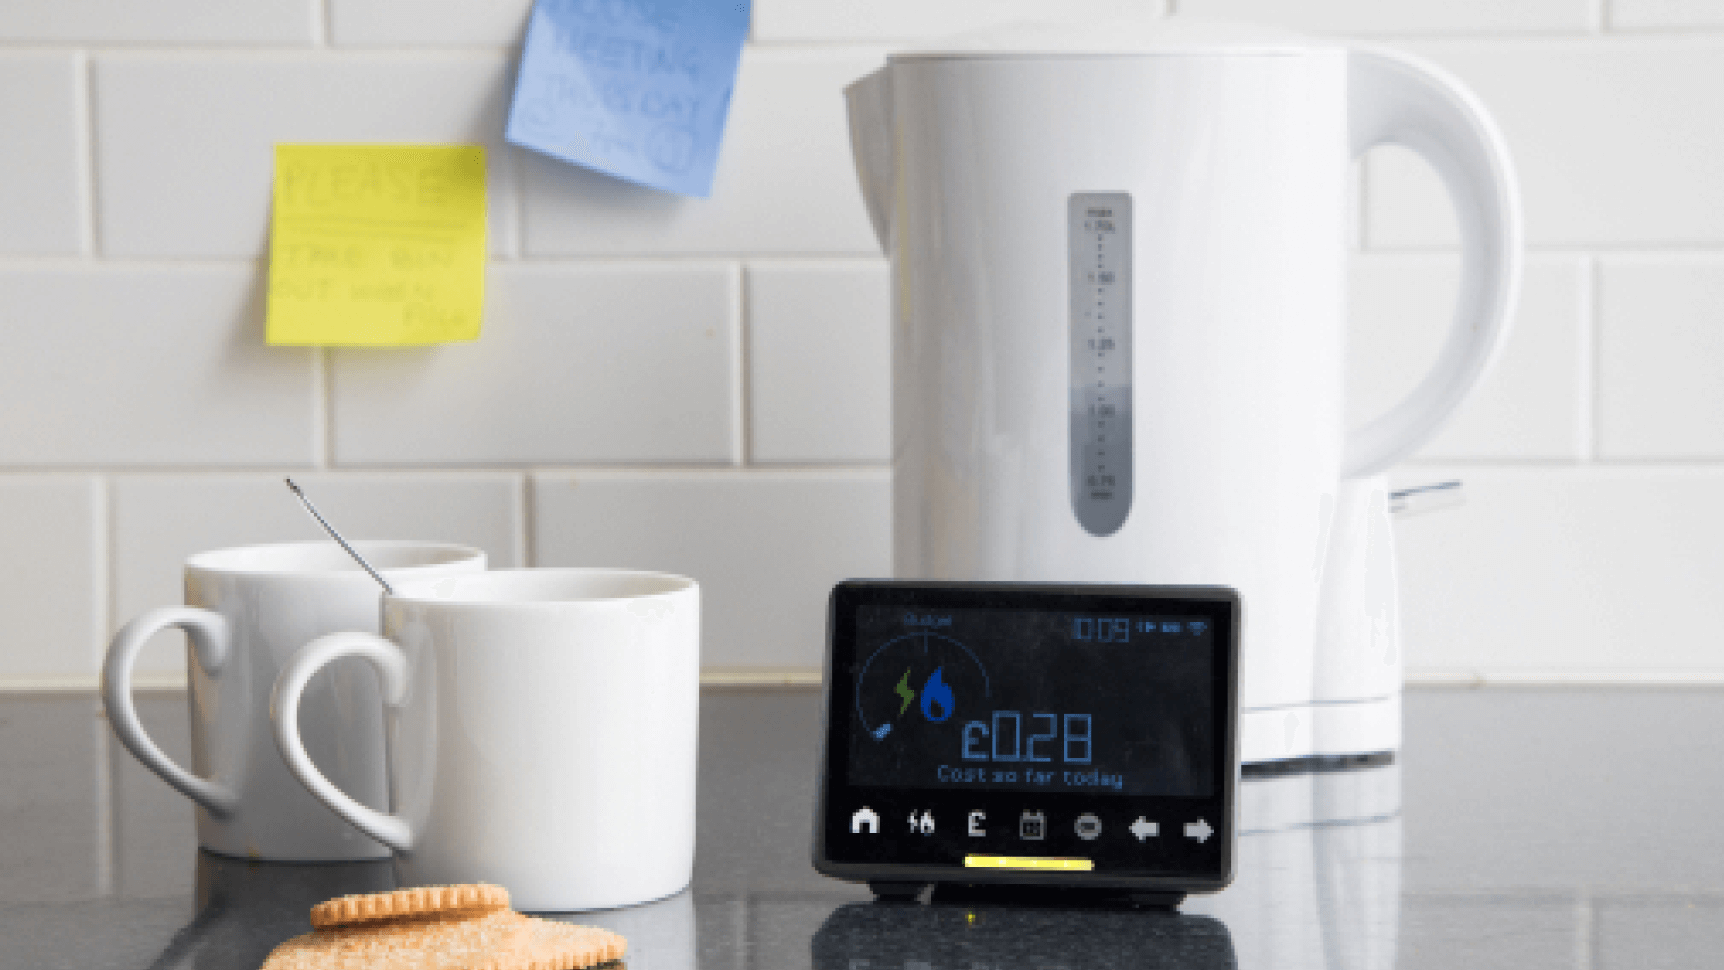 Smart meter in kitchen